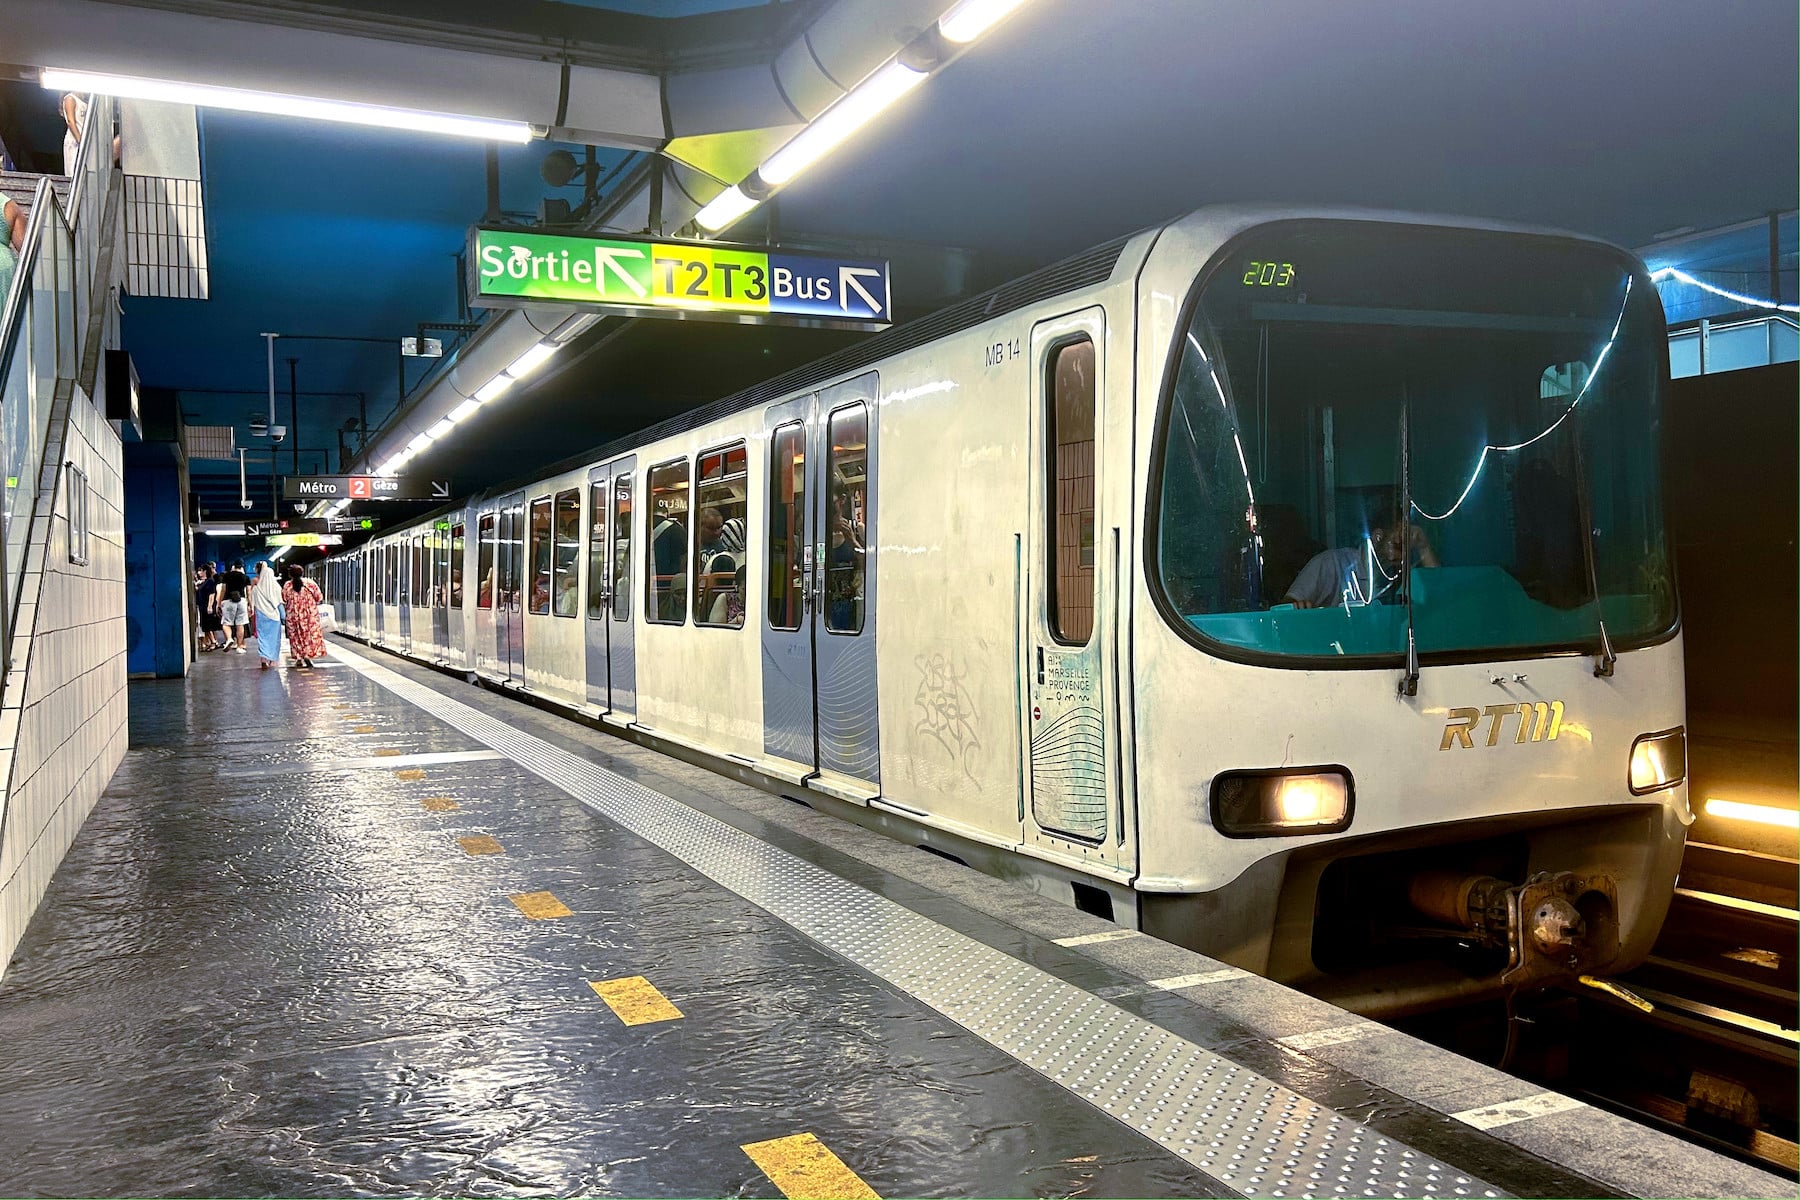 provençal, Vidéo | Les stations de métro marseillaises désormais annoncées en provençal, Made in Marseille